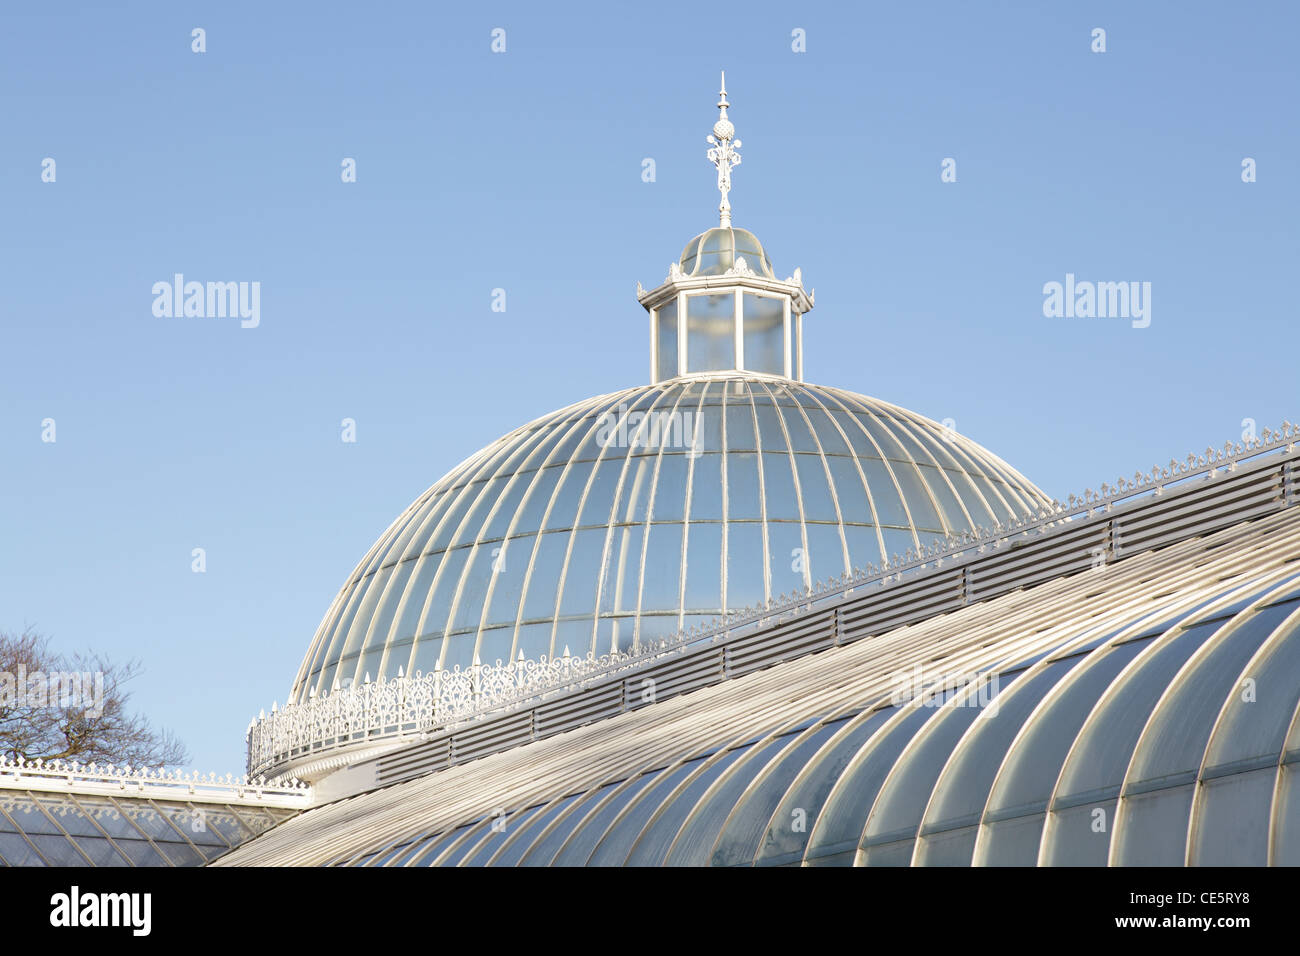 Detalles del techo del Palacio de Kibble, parque público de los Jardines Botánicos, West End of Glasgow, Escocia, Reino Unido Foto de stock